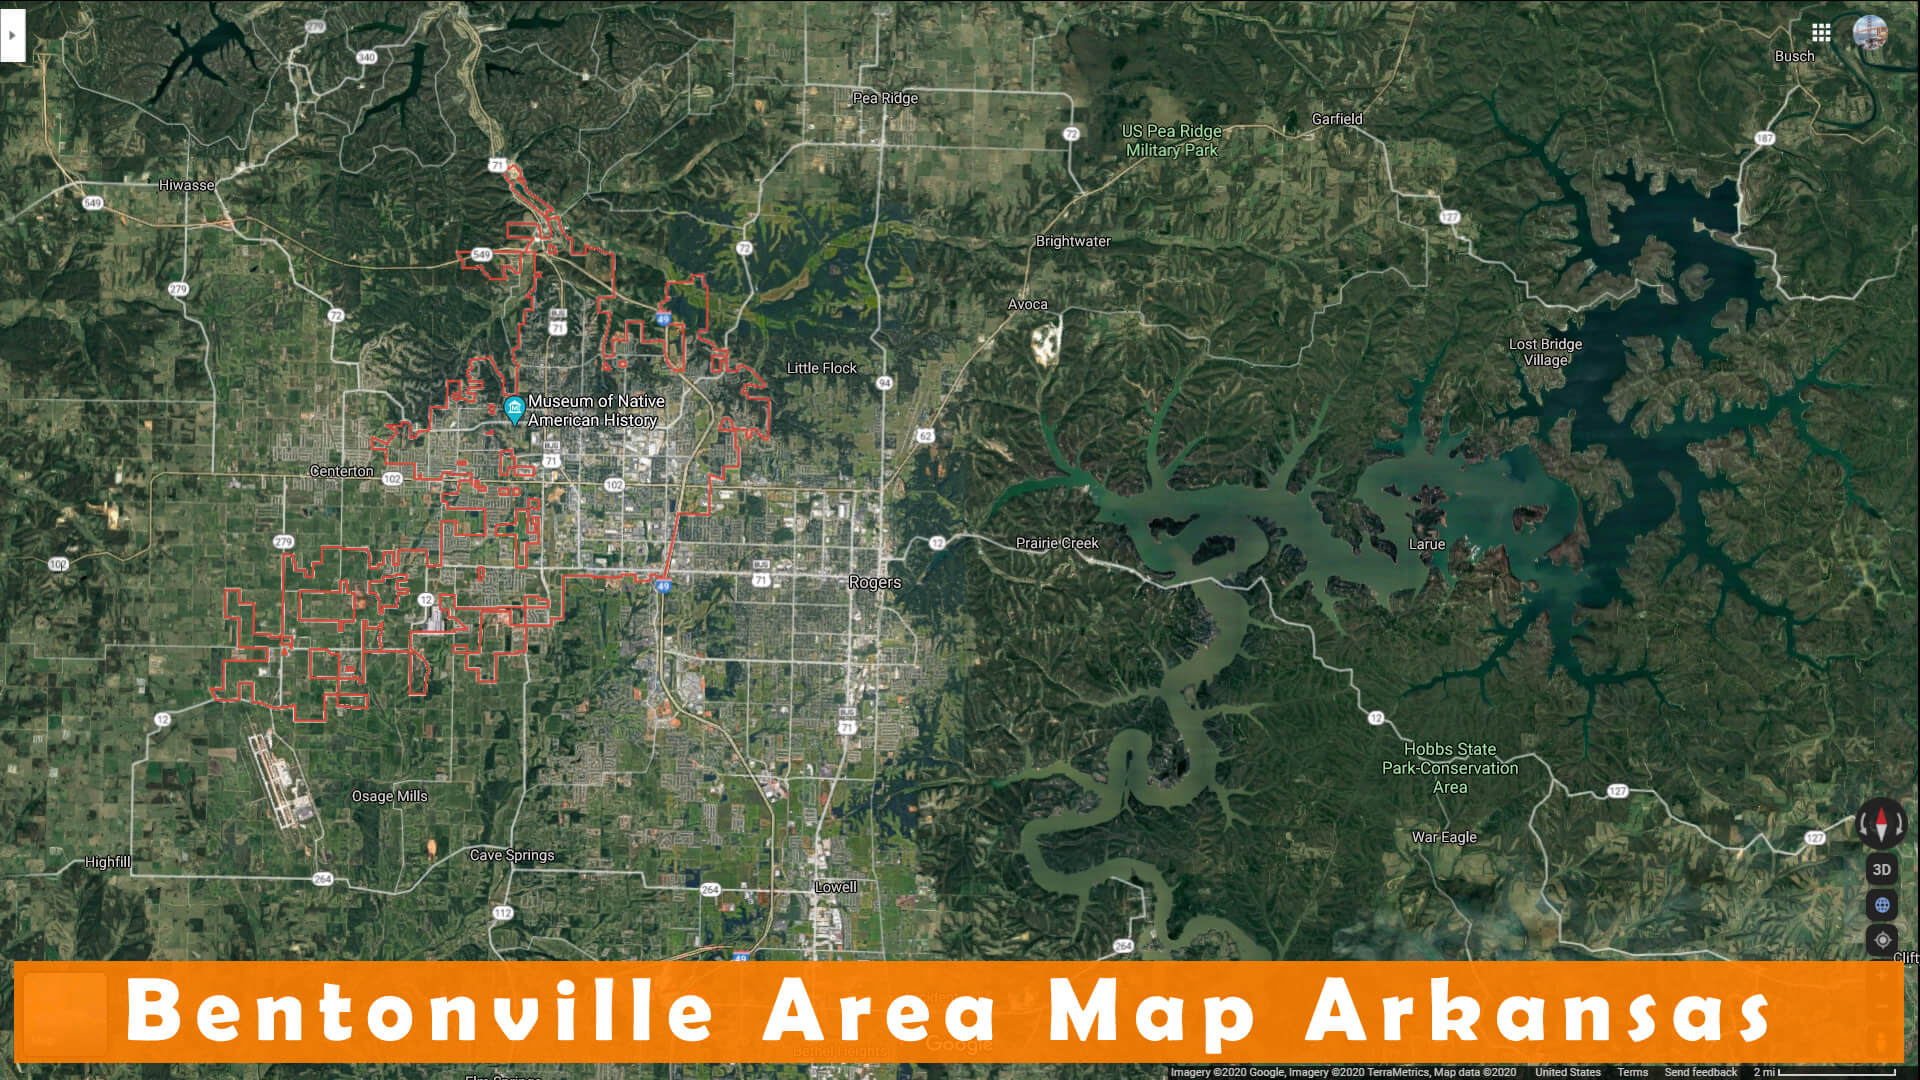 Bentonville Area Map Arkansas